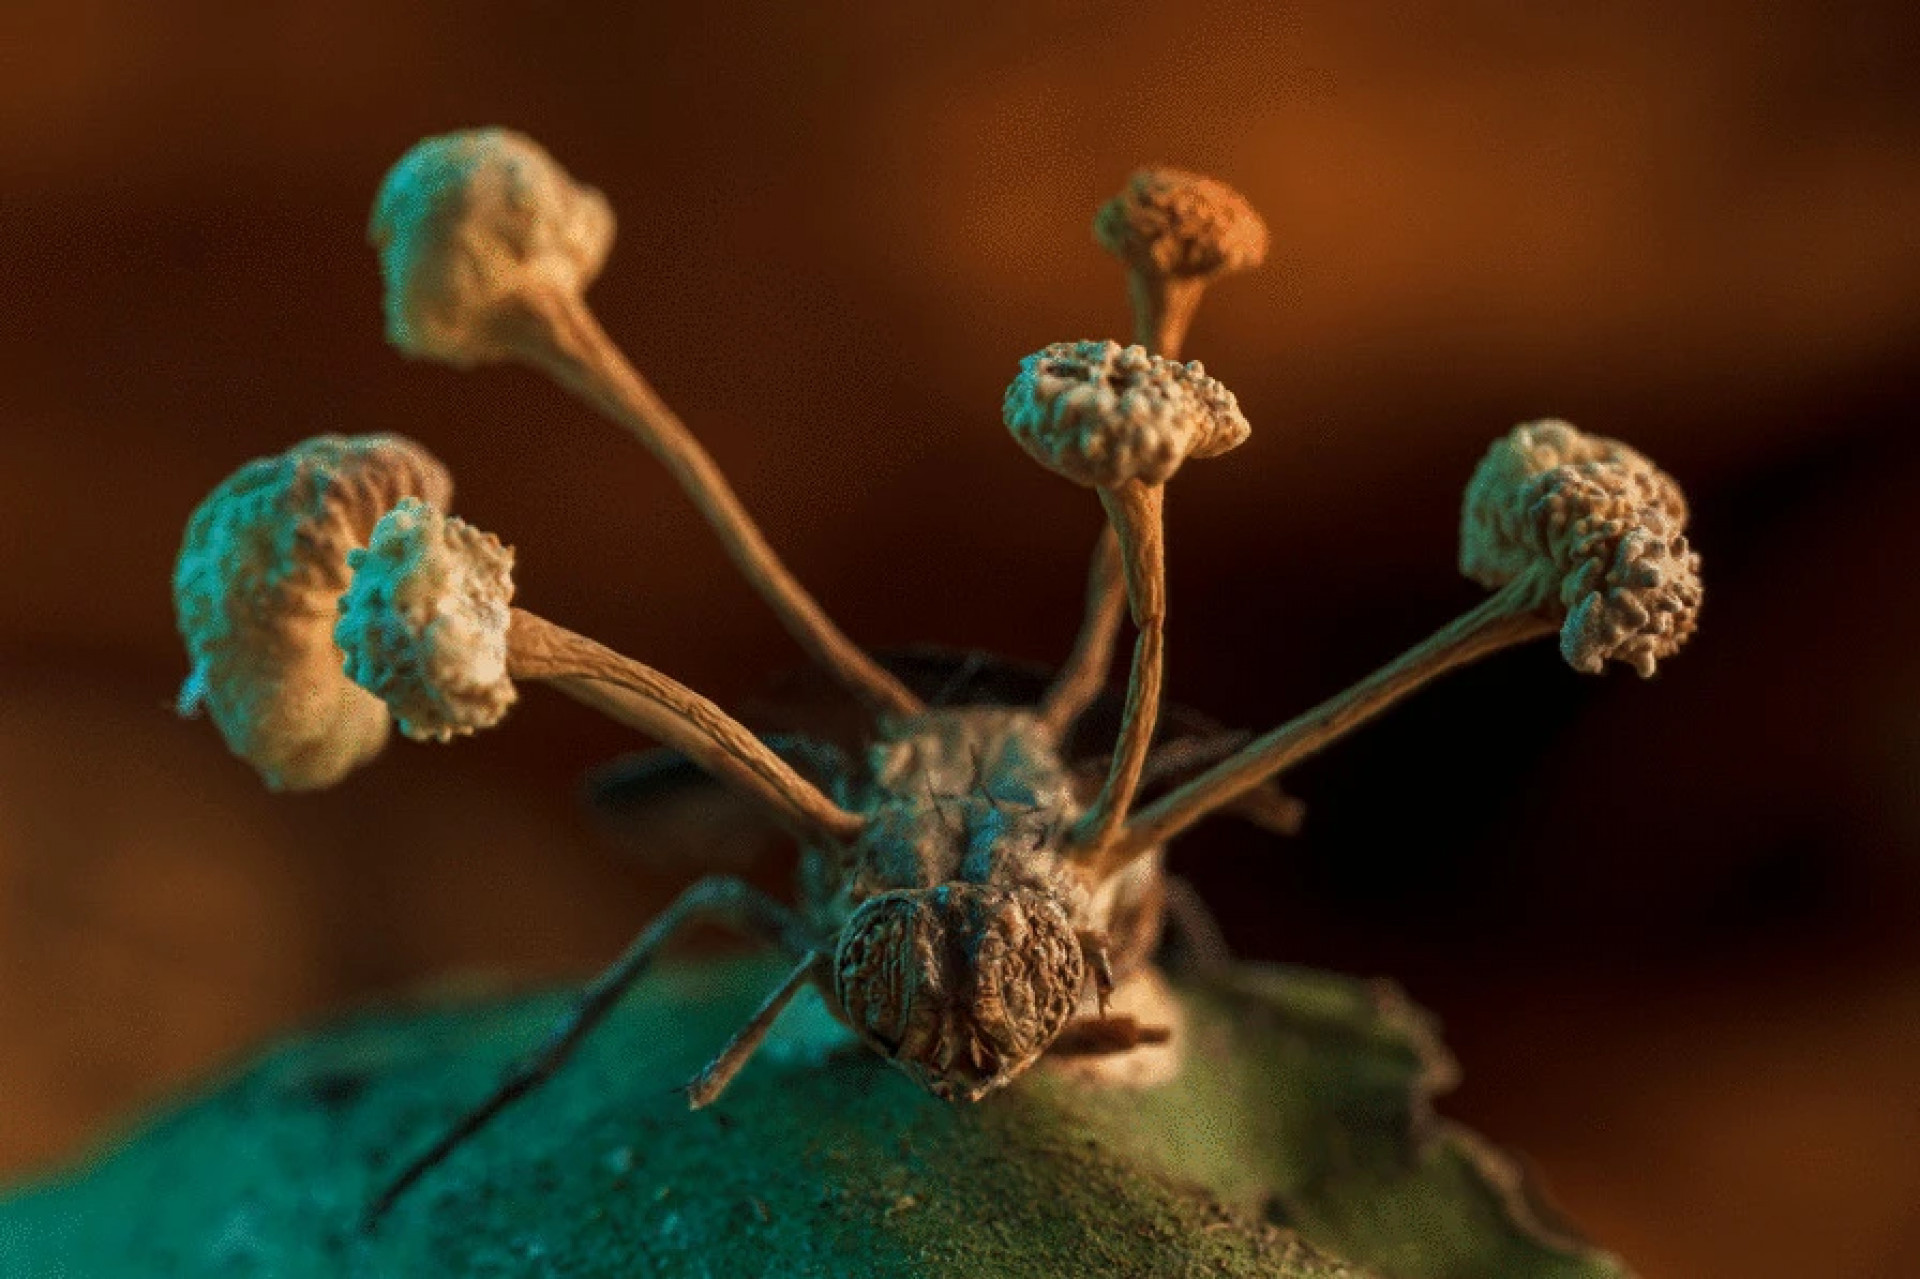 Foto vencedora de competição de fotografia BMC Ecology and Evolution 2022. Na foto, uma mosca parasitada por um fungo.(Foto: Roberto García-Roa / BMC Ecology and Evolution Image Competition)